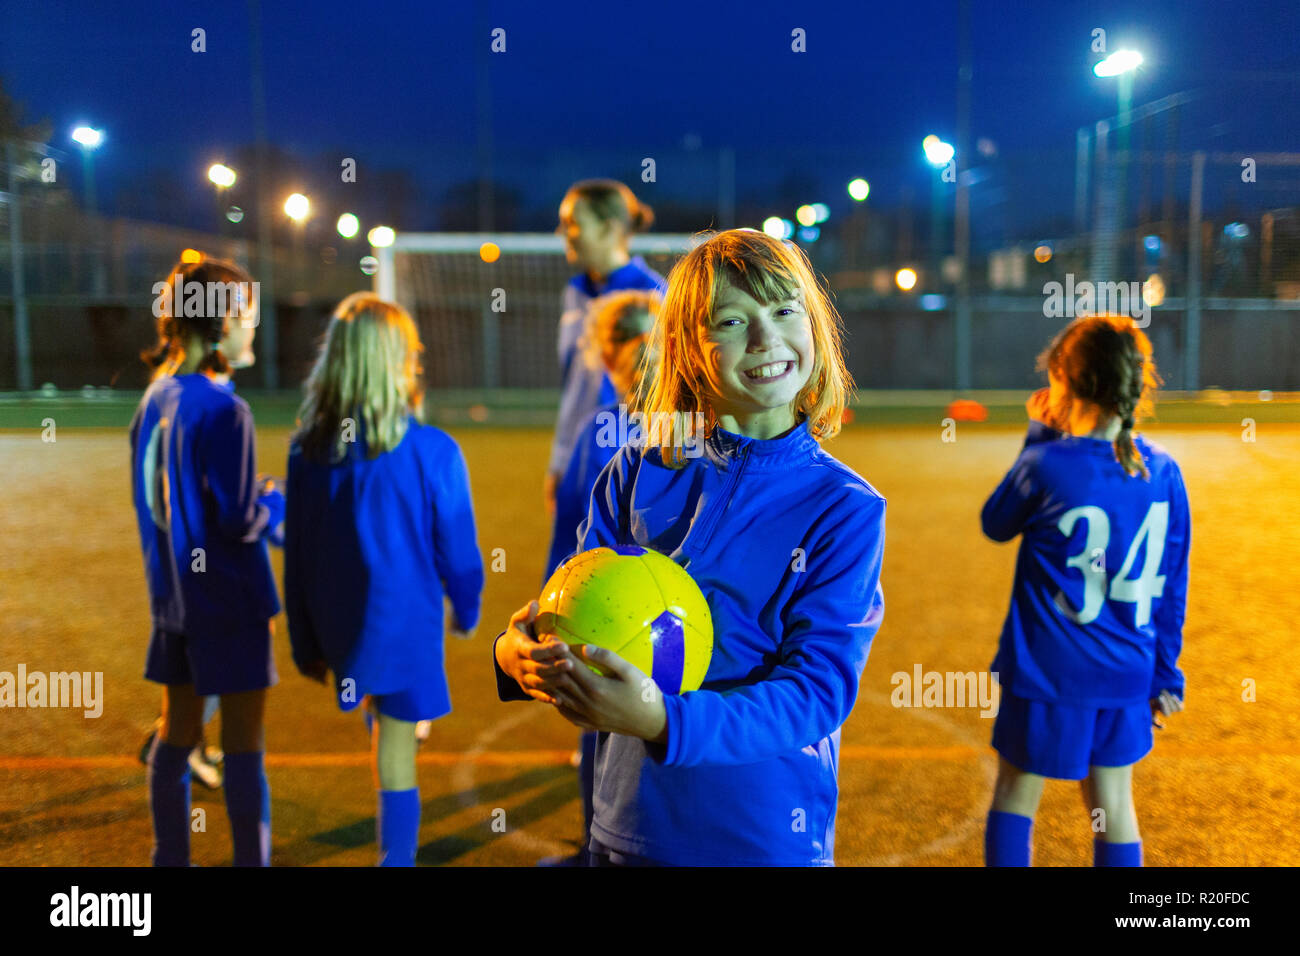 Porträt Lächeln, begeisterte Mädchen mit Fußball-Praxis auf dem Feld in der Nacht Stockfoto